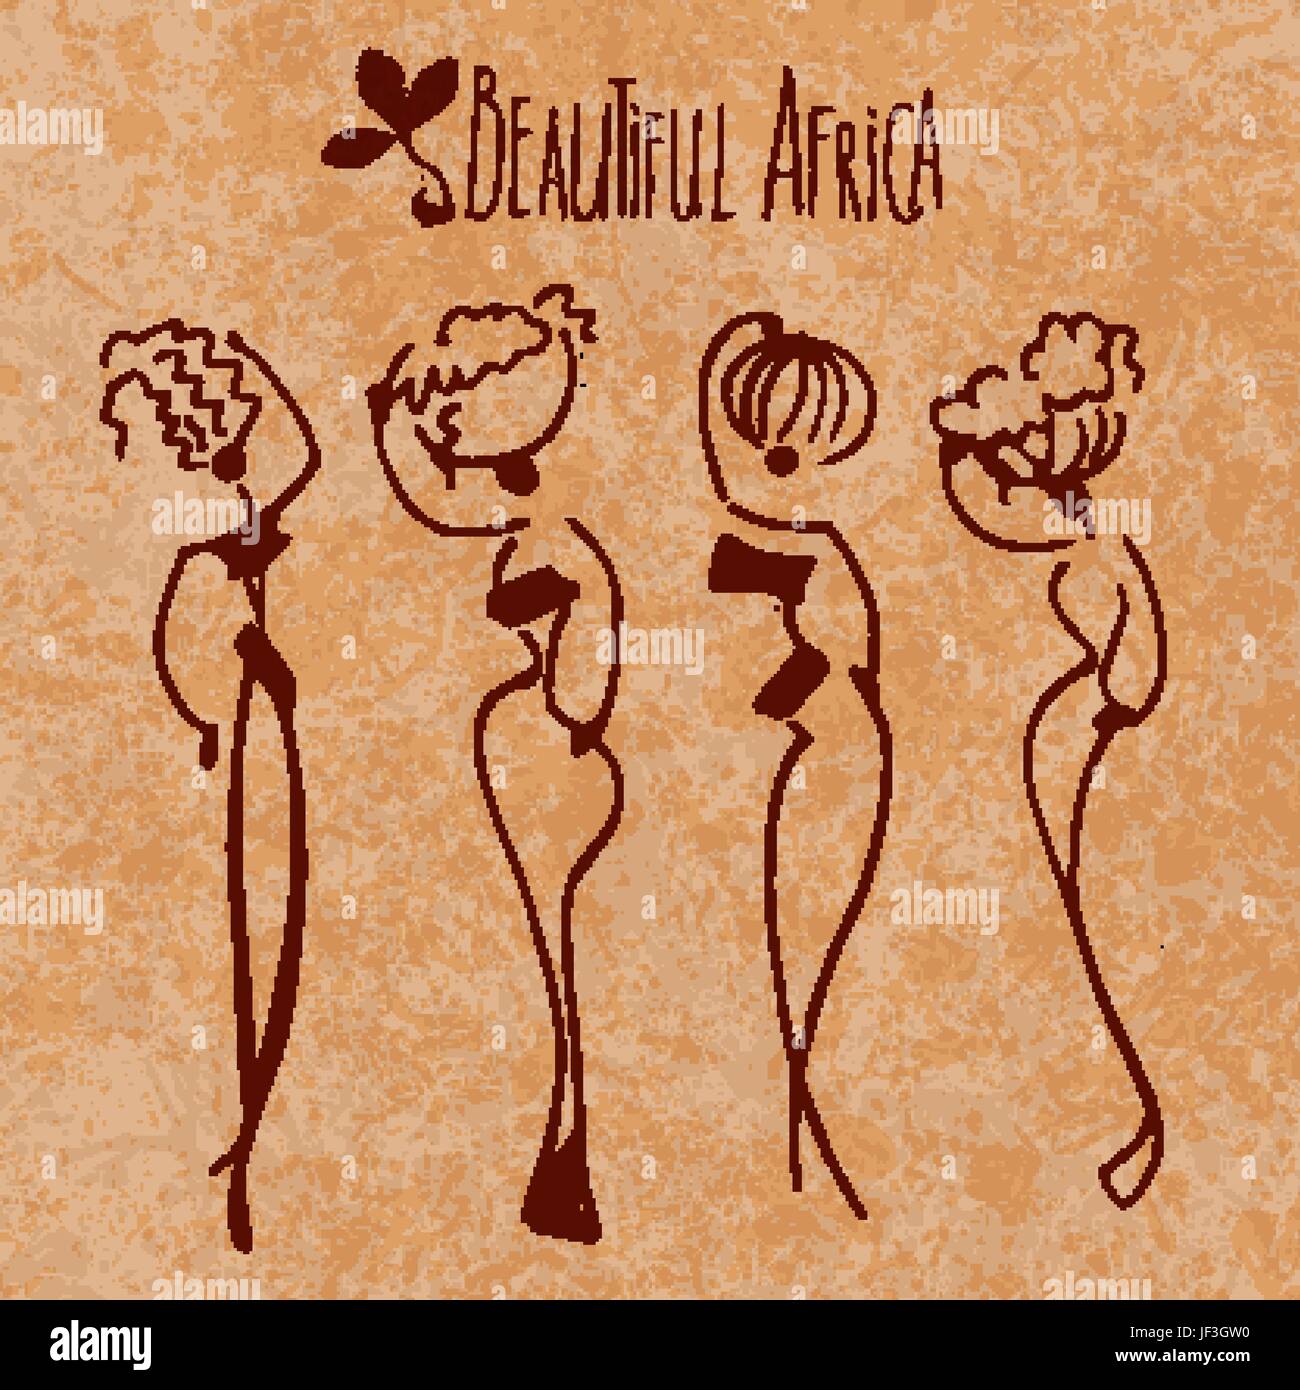 Femme Africaine, femme de stylisation, chiffres d'illustration vectorielle traditionnelle Illustration de Vecteur